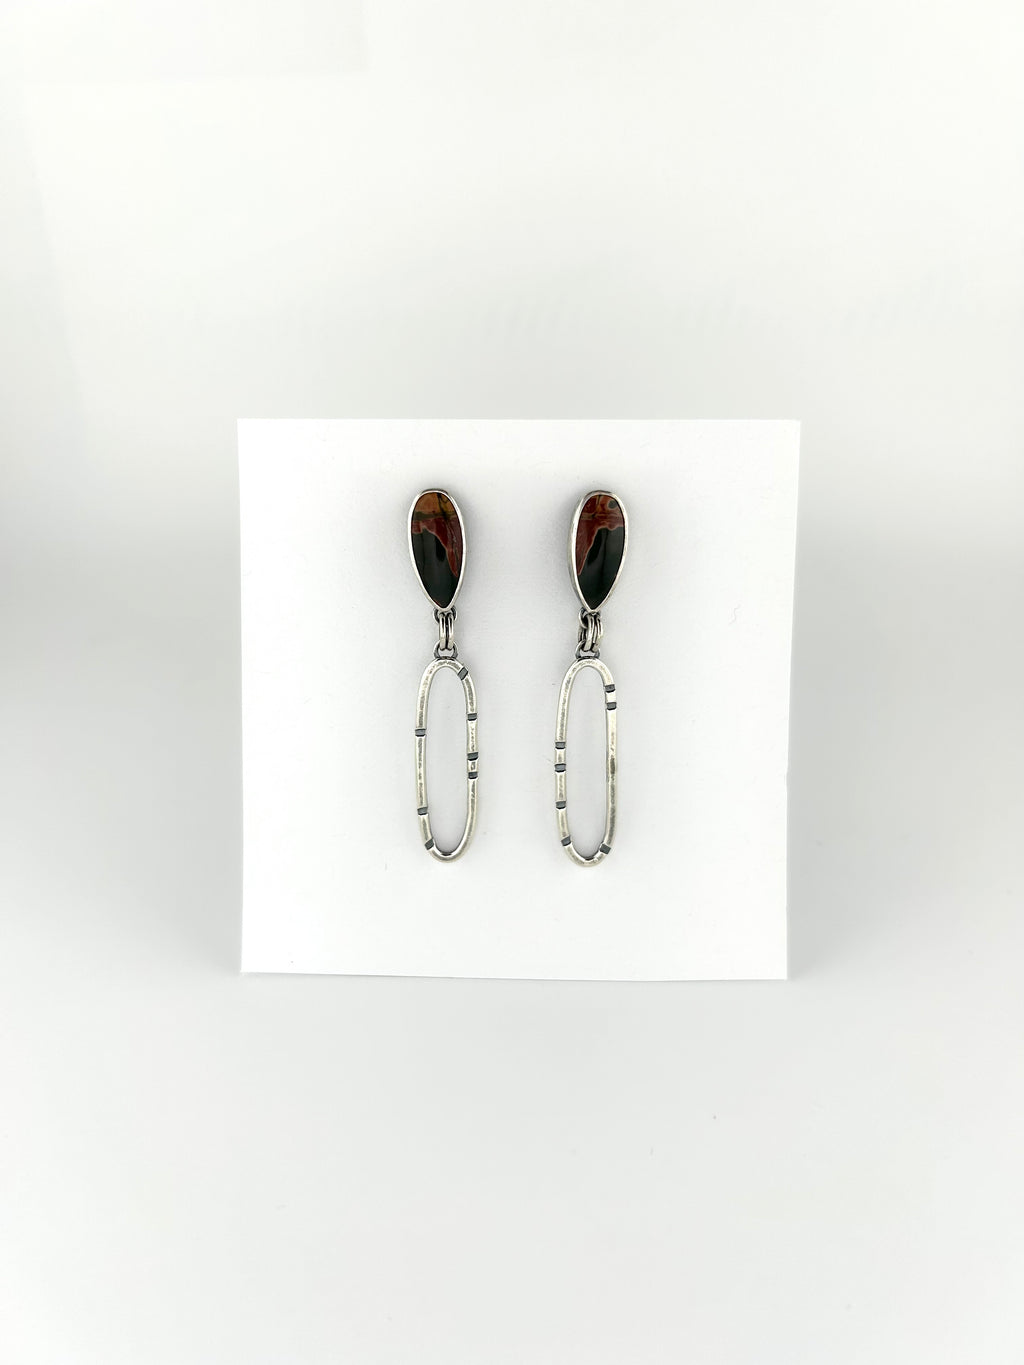 Anvil Hoop Earrings with Stamped Sterling Silver and Red Creek Jasper